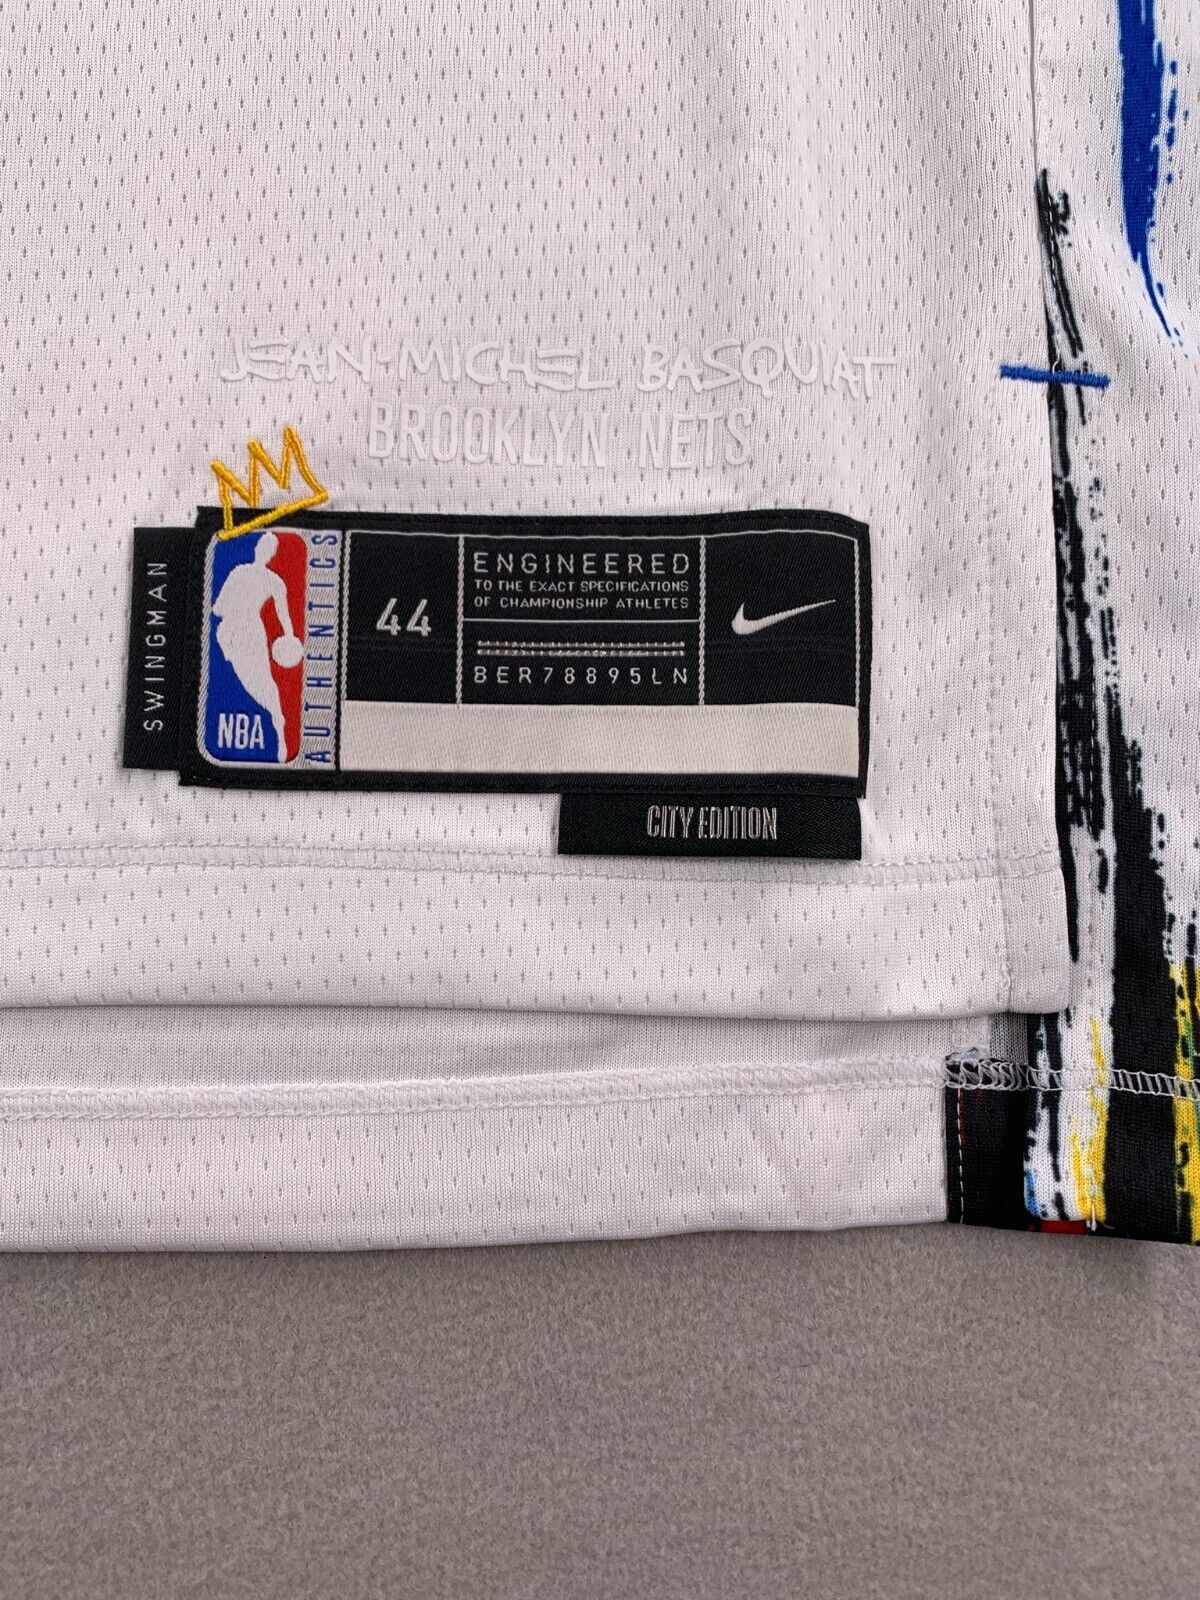 2019-23 Brooklyn Nets Durant #7 Nike Swingman Away Jersey (L.Kids)